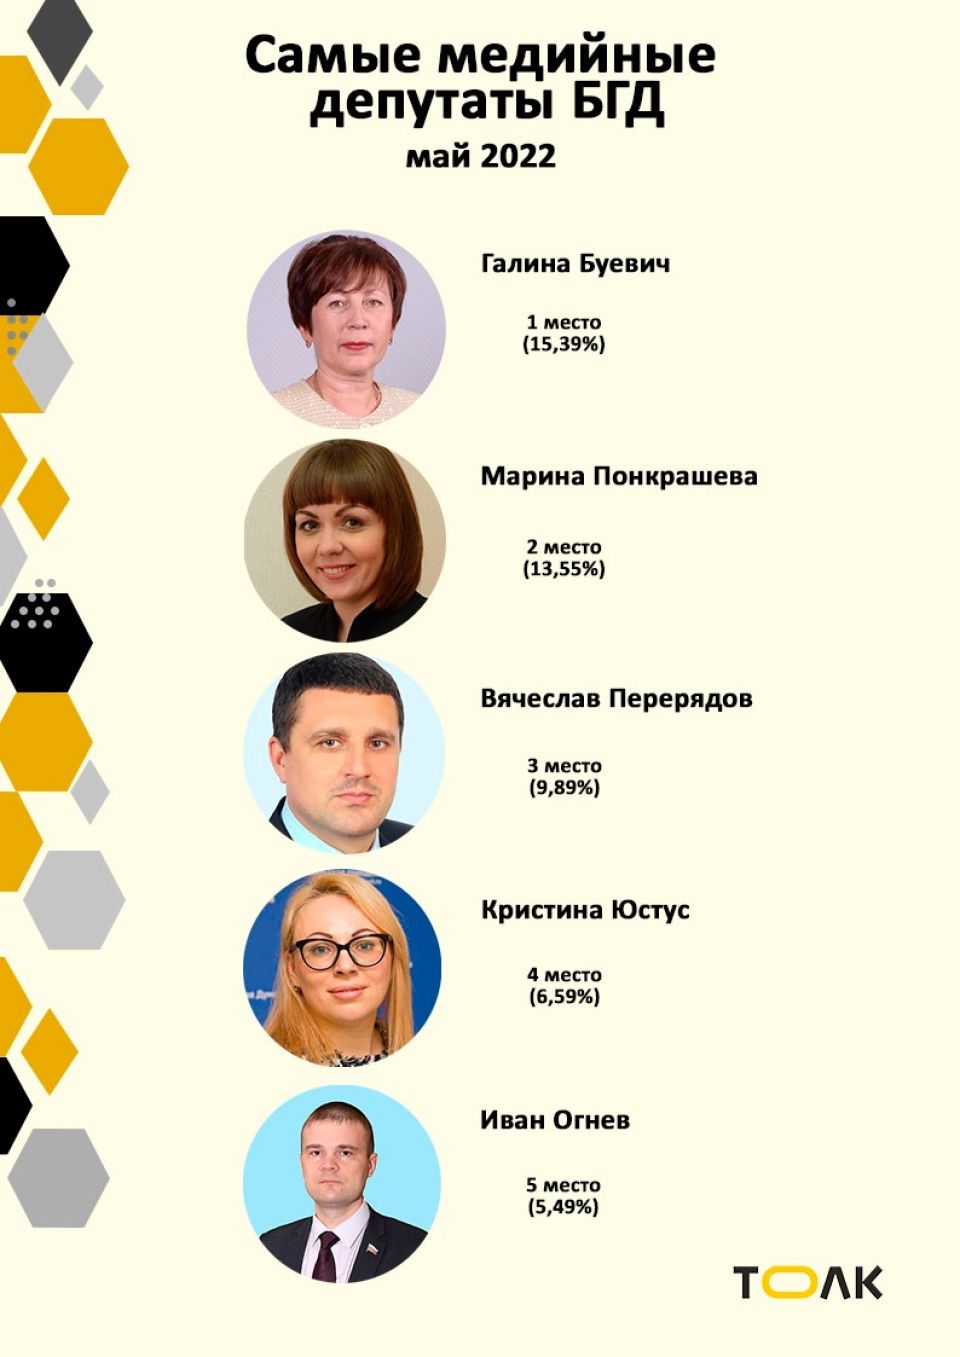 Рейтинг медийности депутатов БГД, май 2022 года